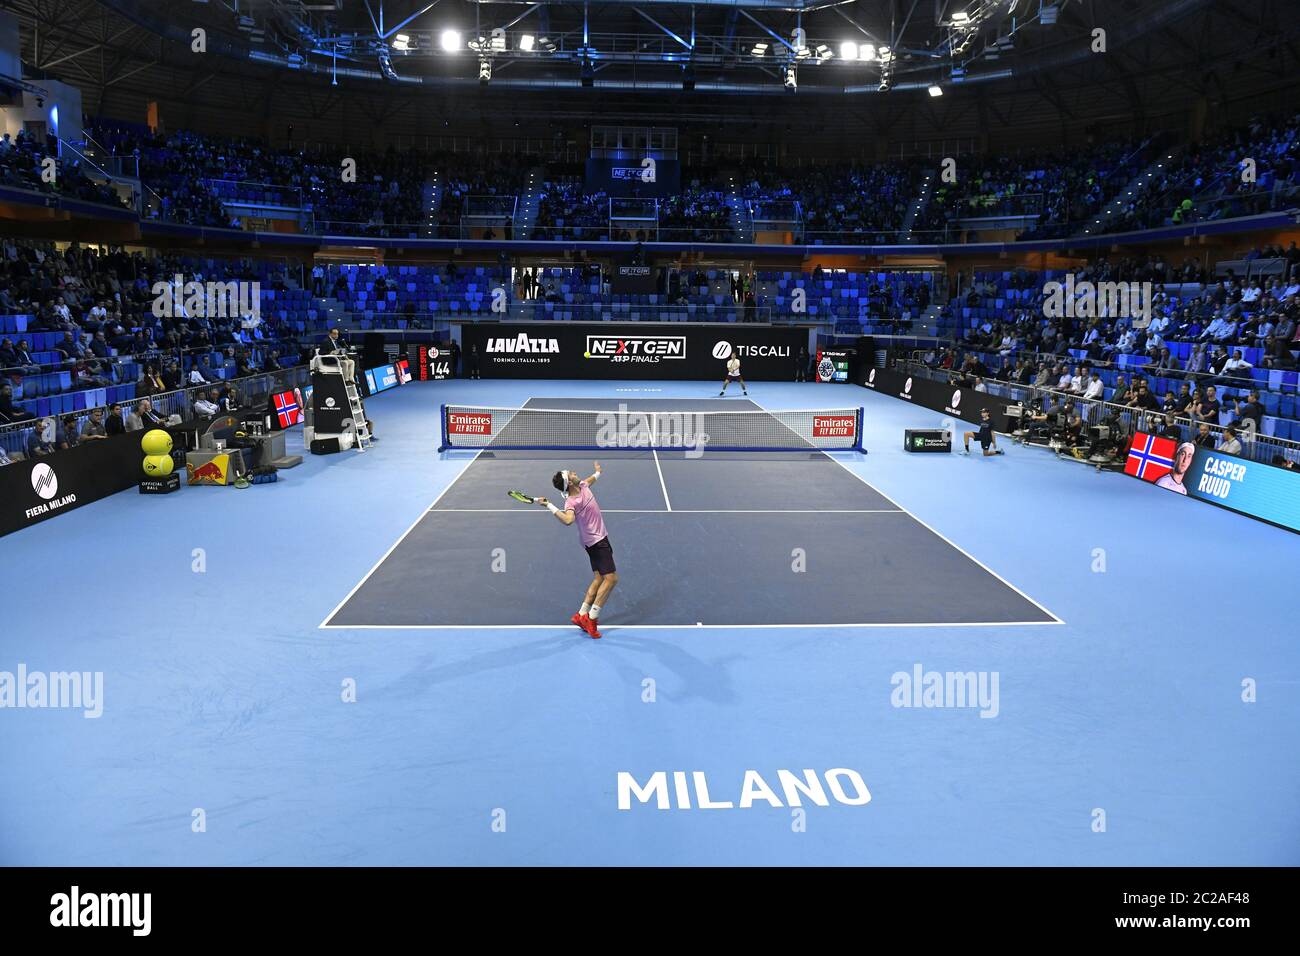 Indoor-Tennisplatz, während eines Tennis-Match der Next Gen ATP Finals, in Mailand. Stockfoto